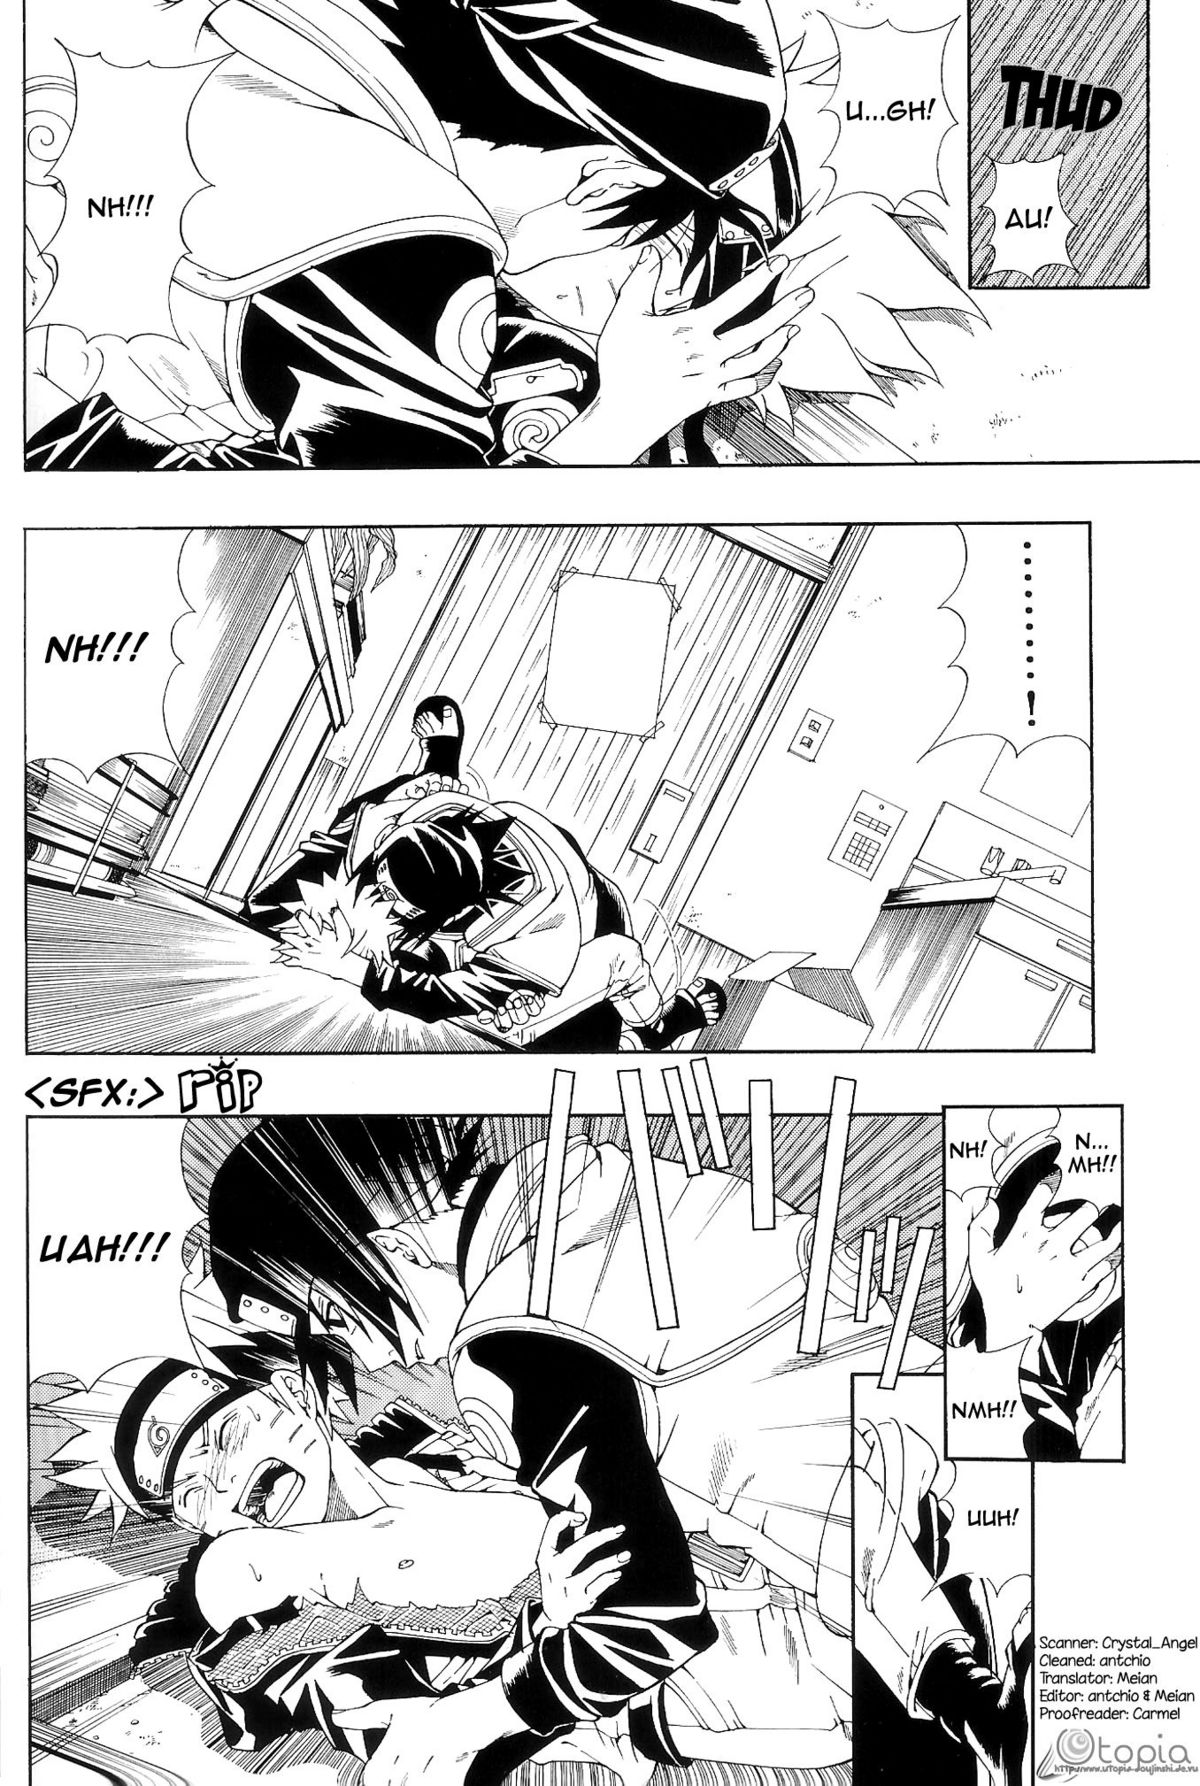 ERO ERO²: Volume 1.5  (NARUTO) [Sasuke X Naruto] YAOI -ENG- page 5 full